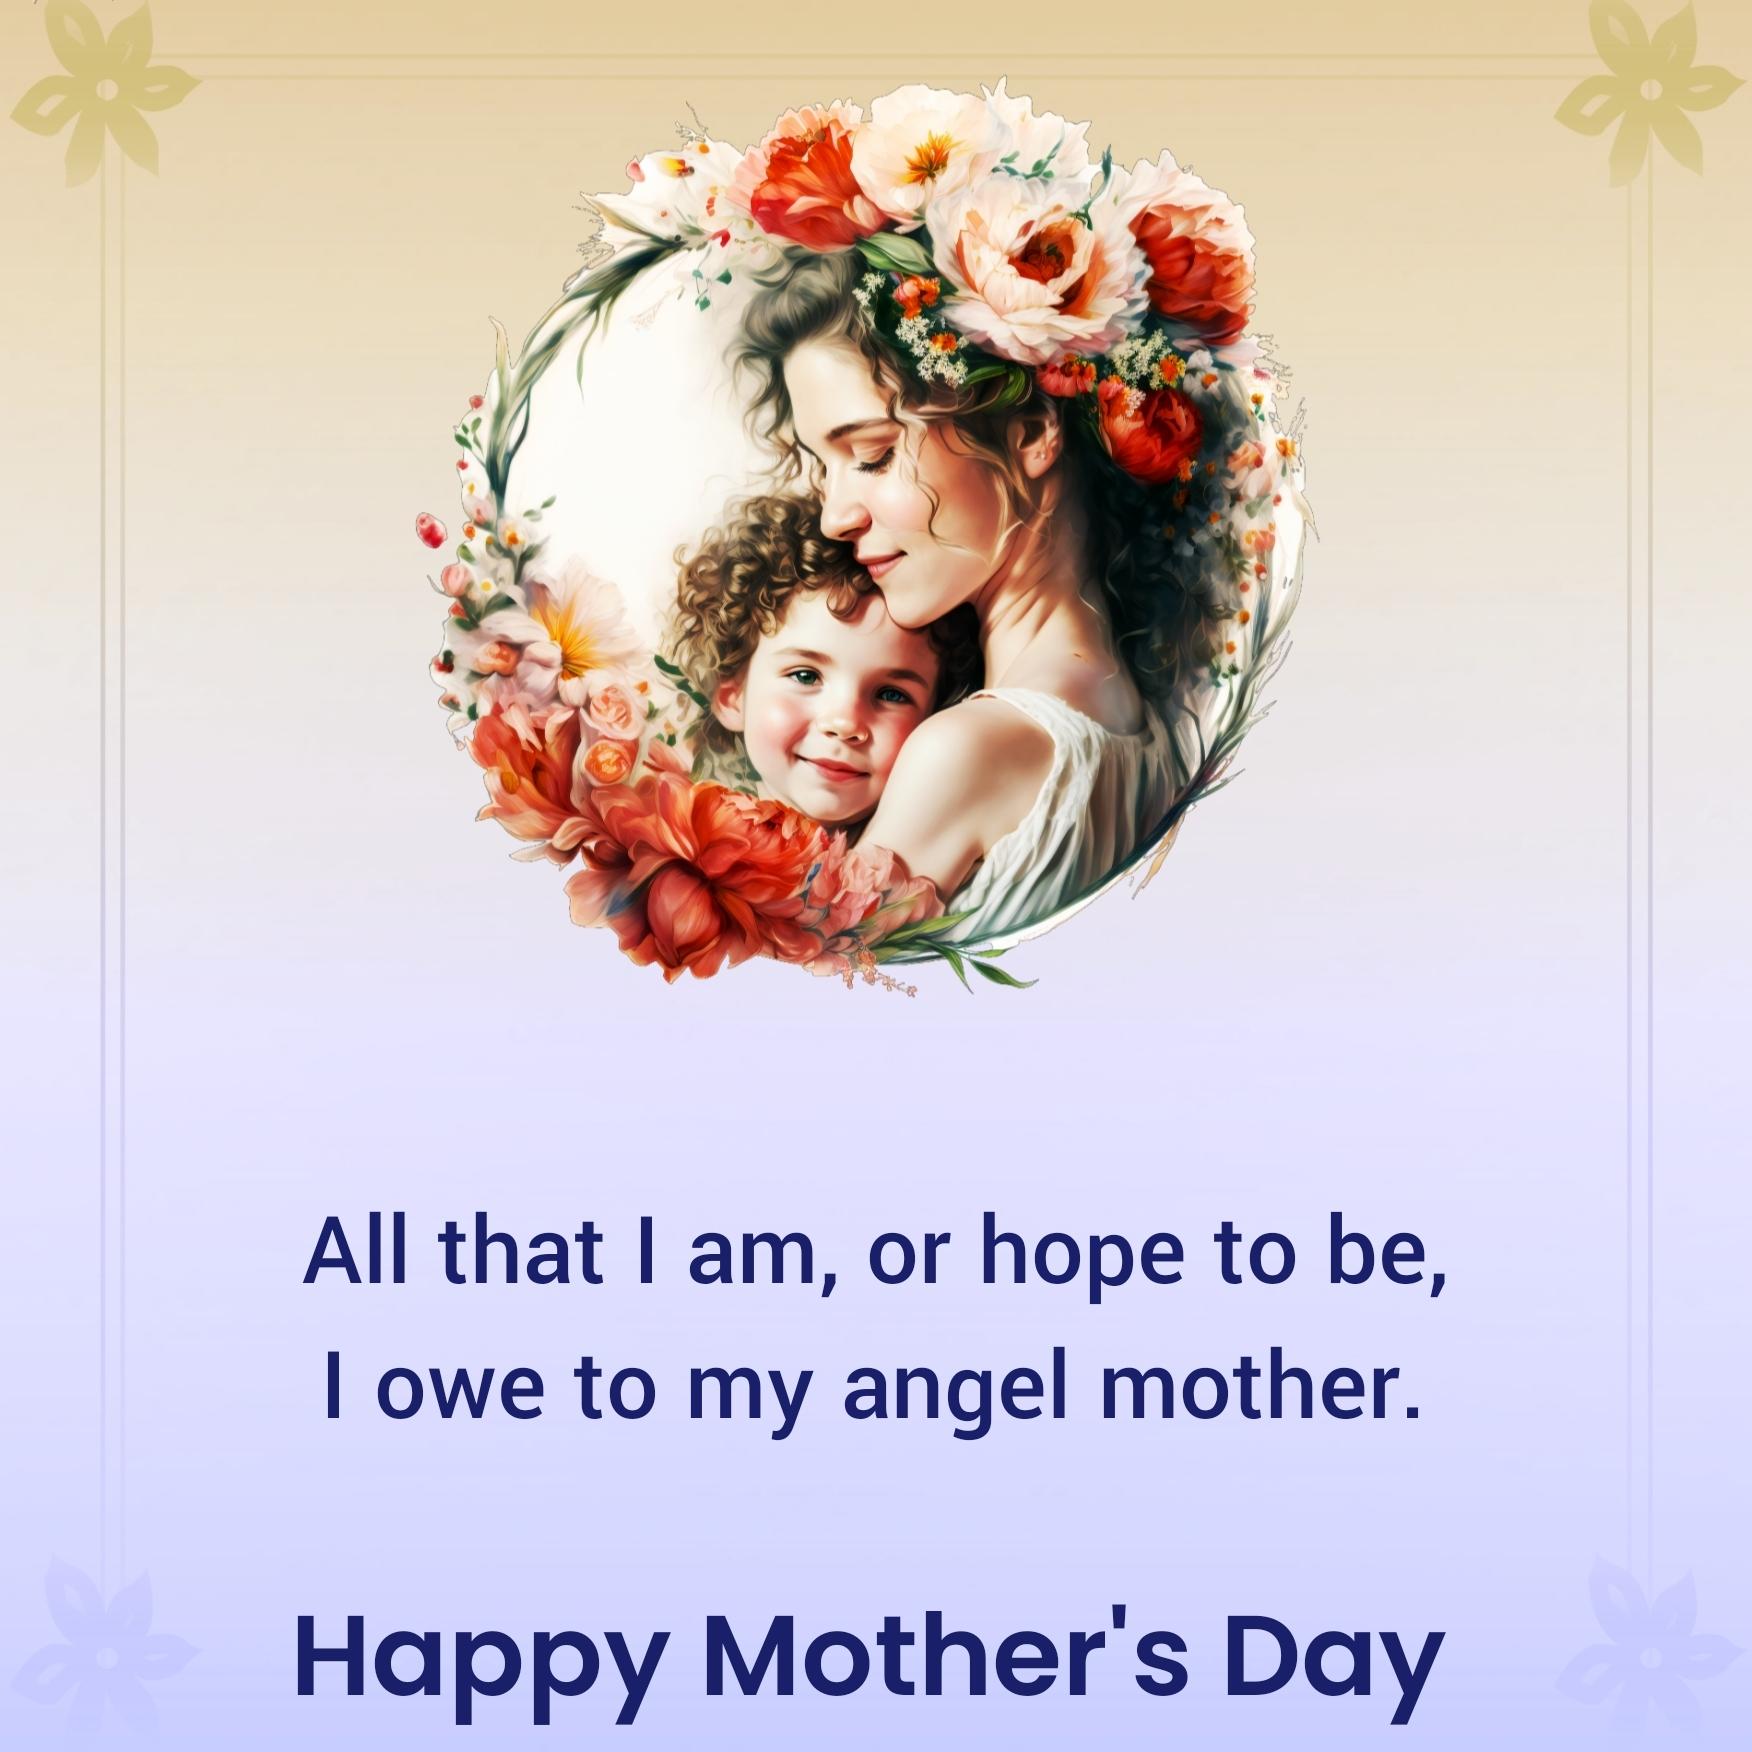 All that I am or hope to be I owe to my angel mother